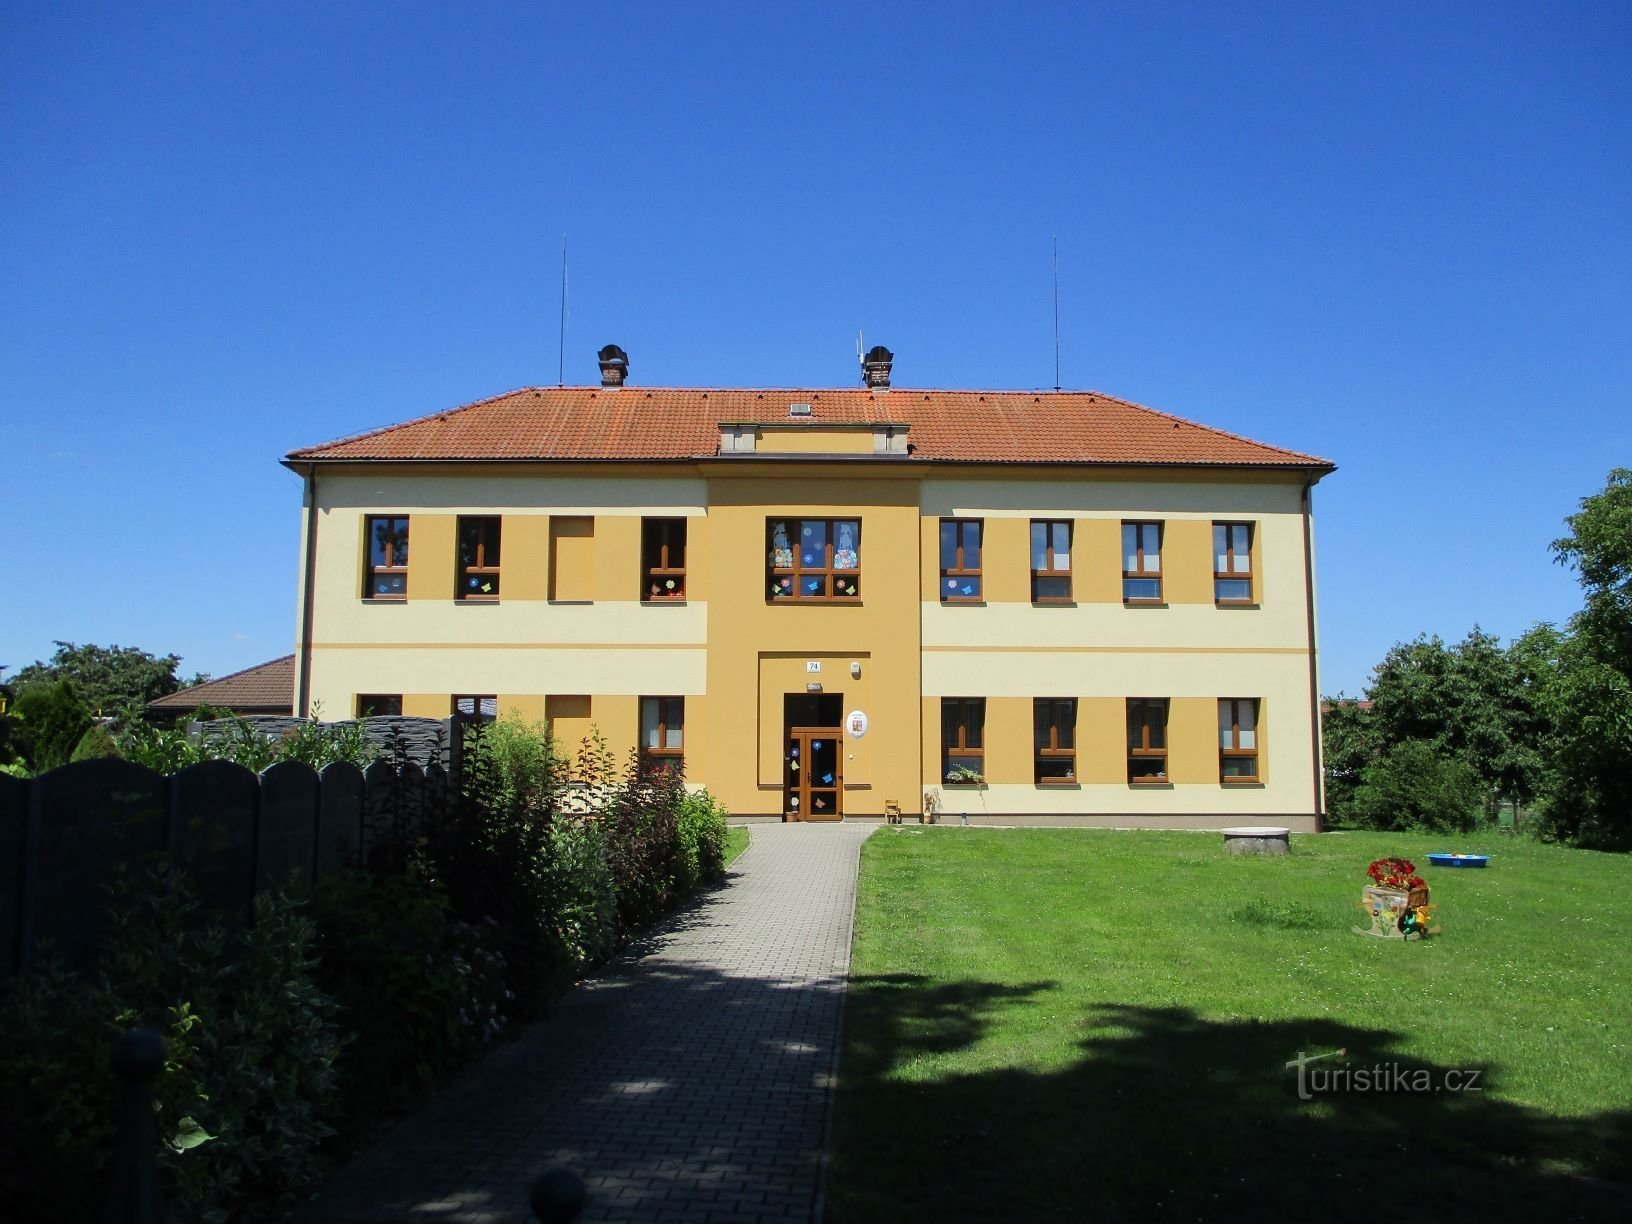 School (Třesovice, 14.7.2020/XNUMX/XNUMX)